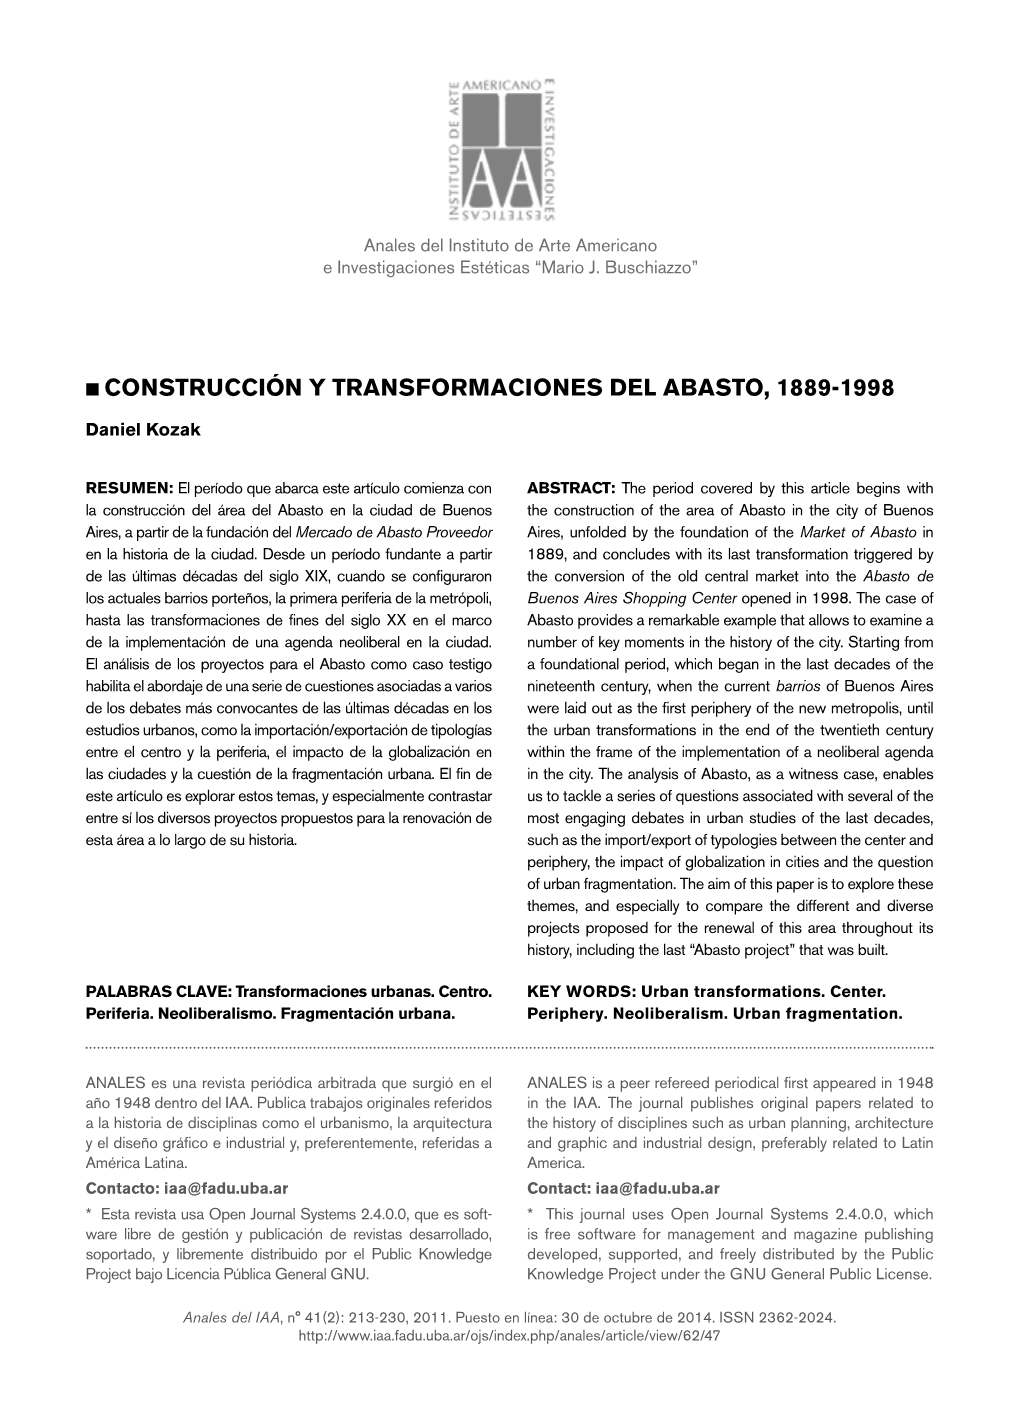 Construcción Y Transformaciones Del Abasto, 1889-1998